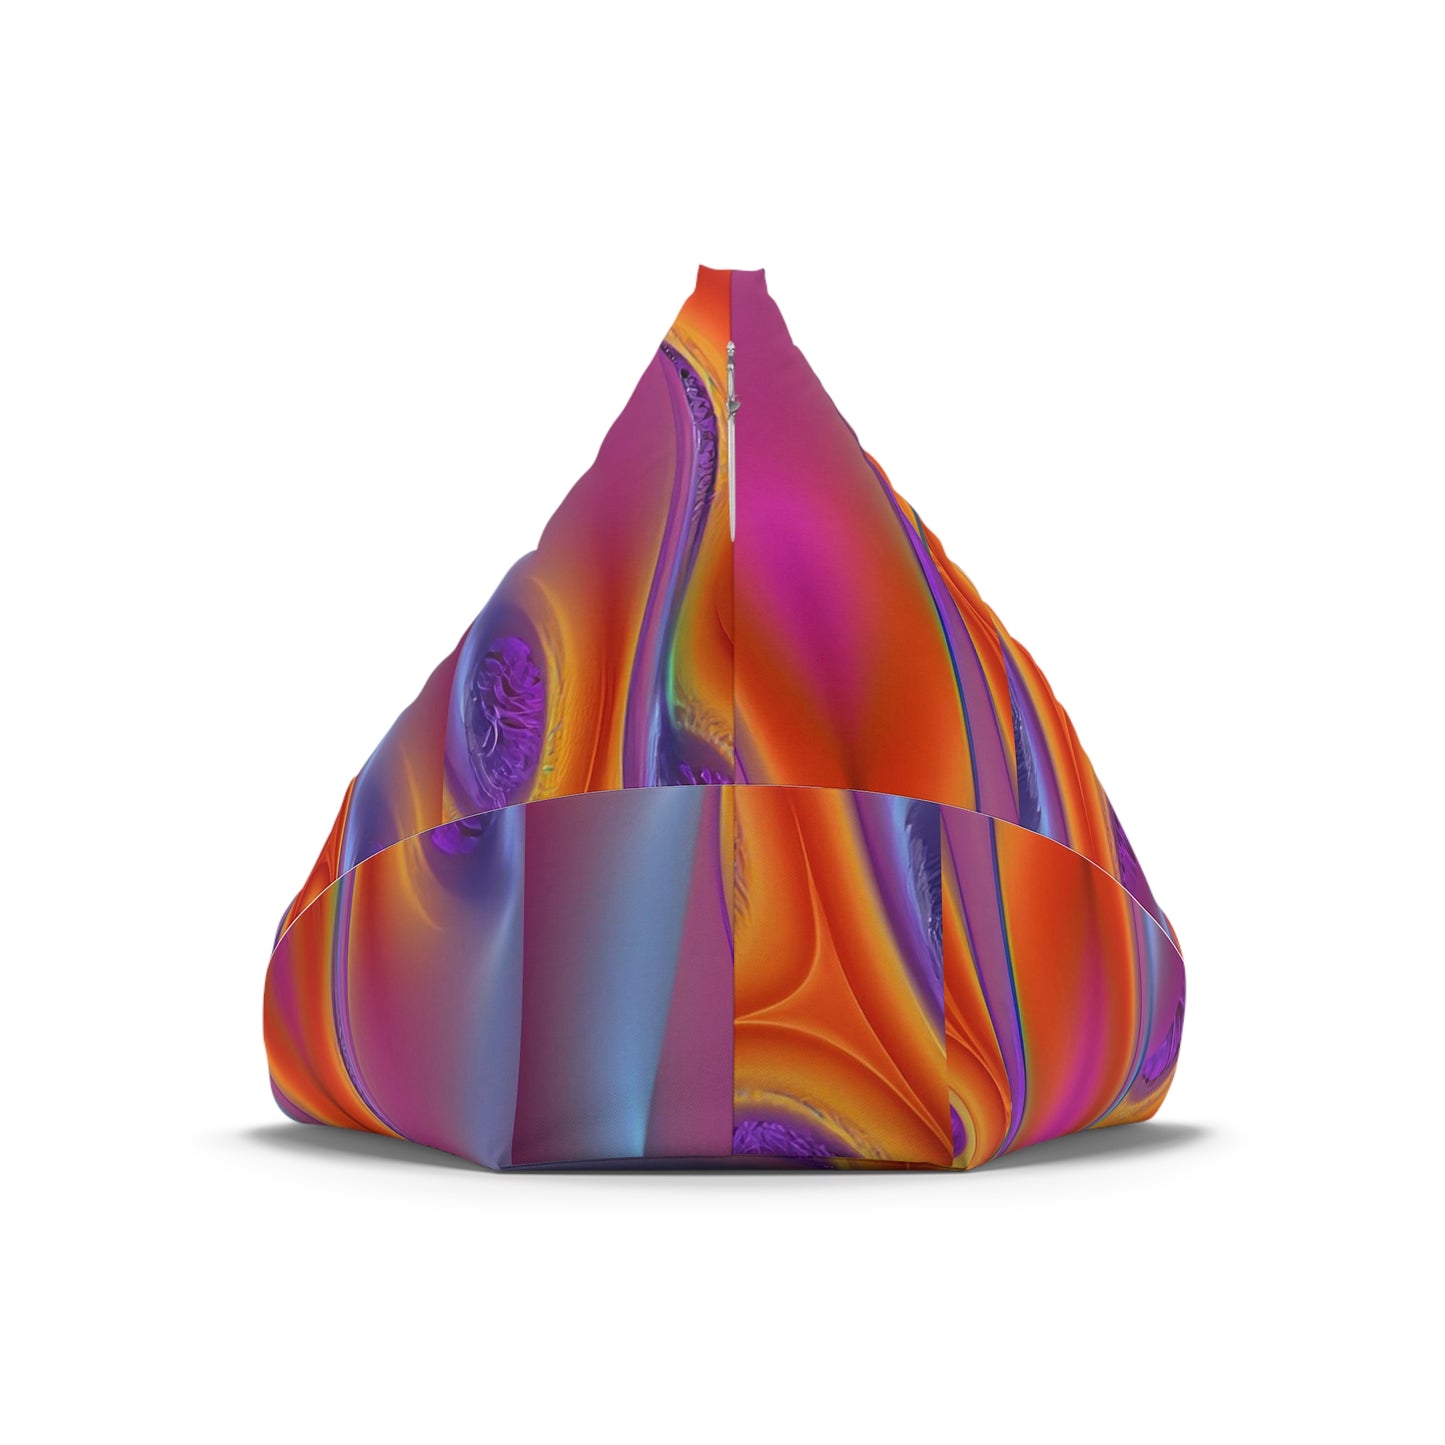 Purple Flame shons Bean Bag Chair Cover